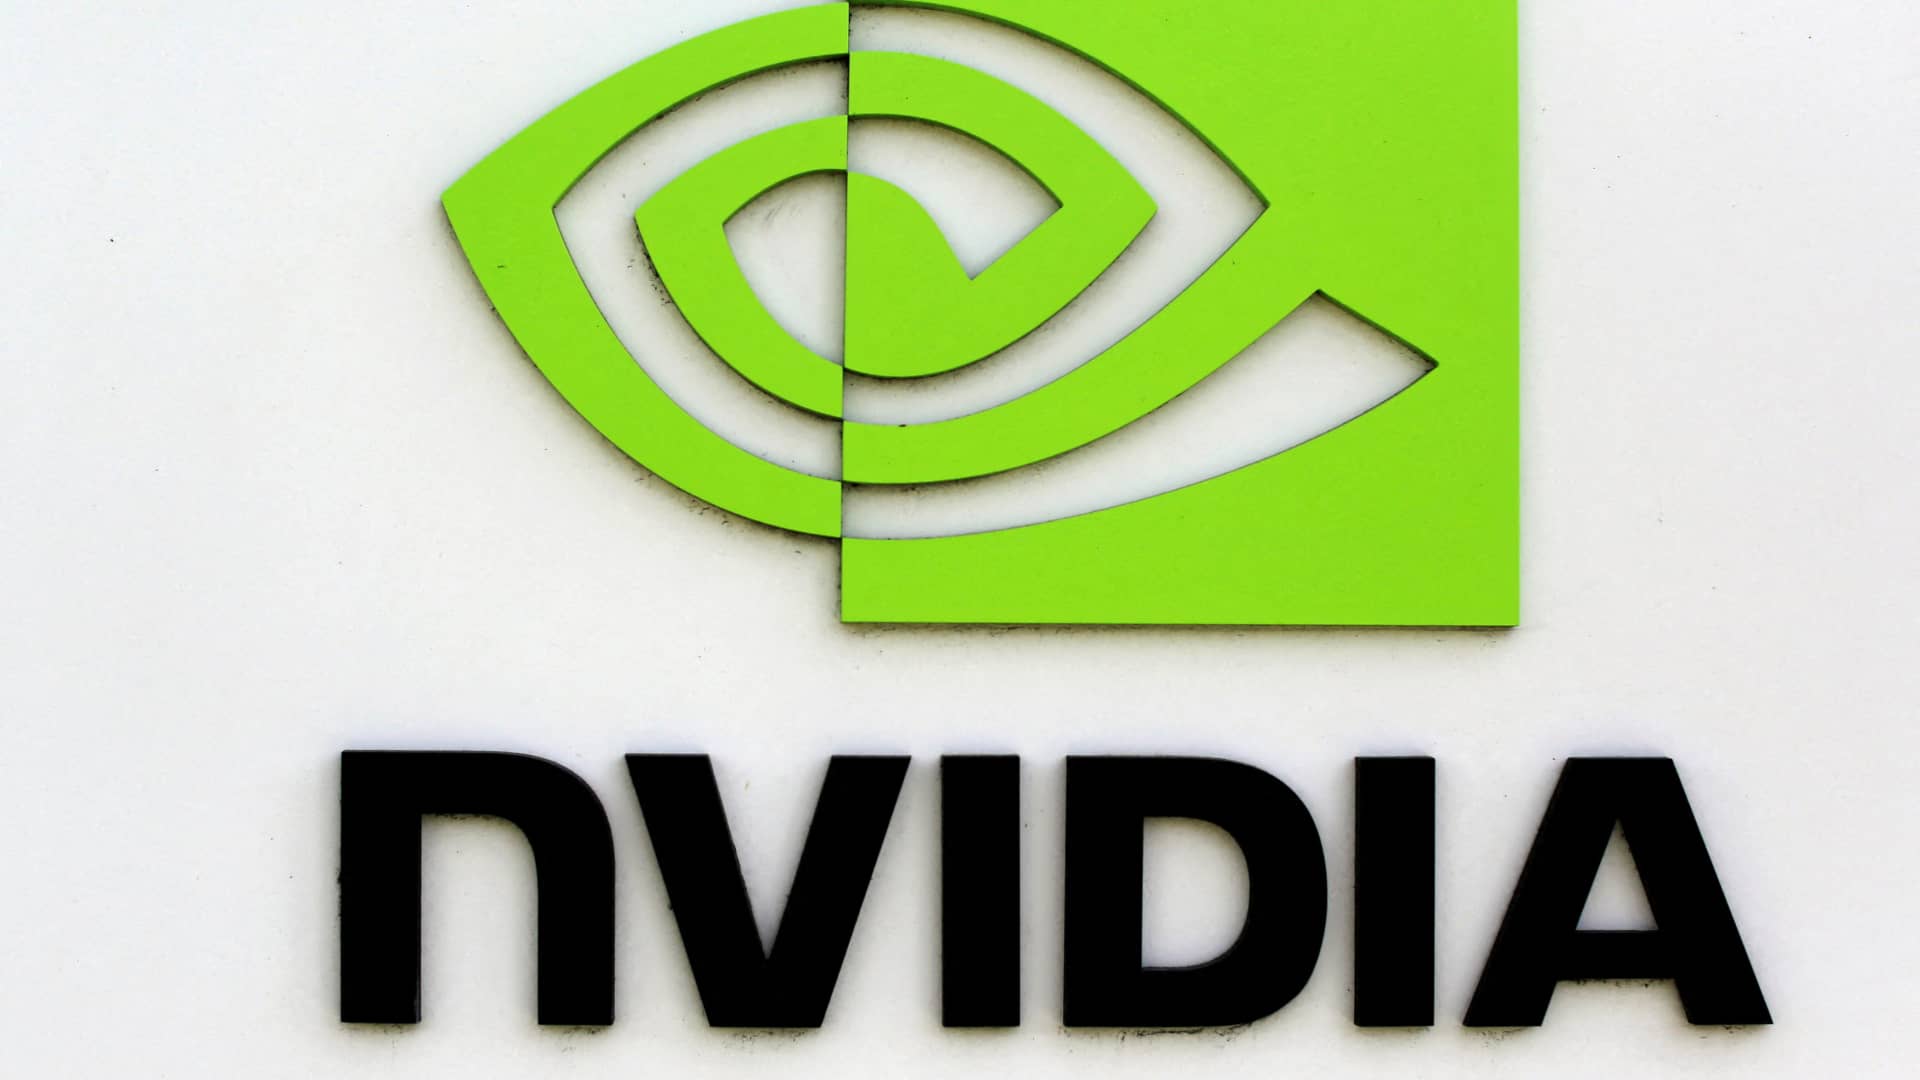 Nvidia to build a $200 million AI center in Indonesia amid Southeast Asia push